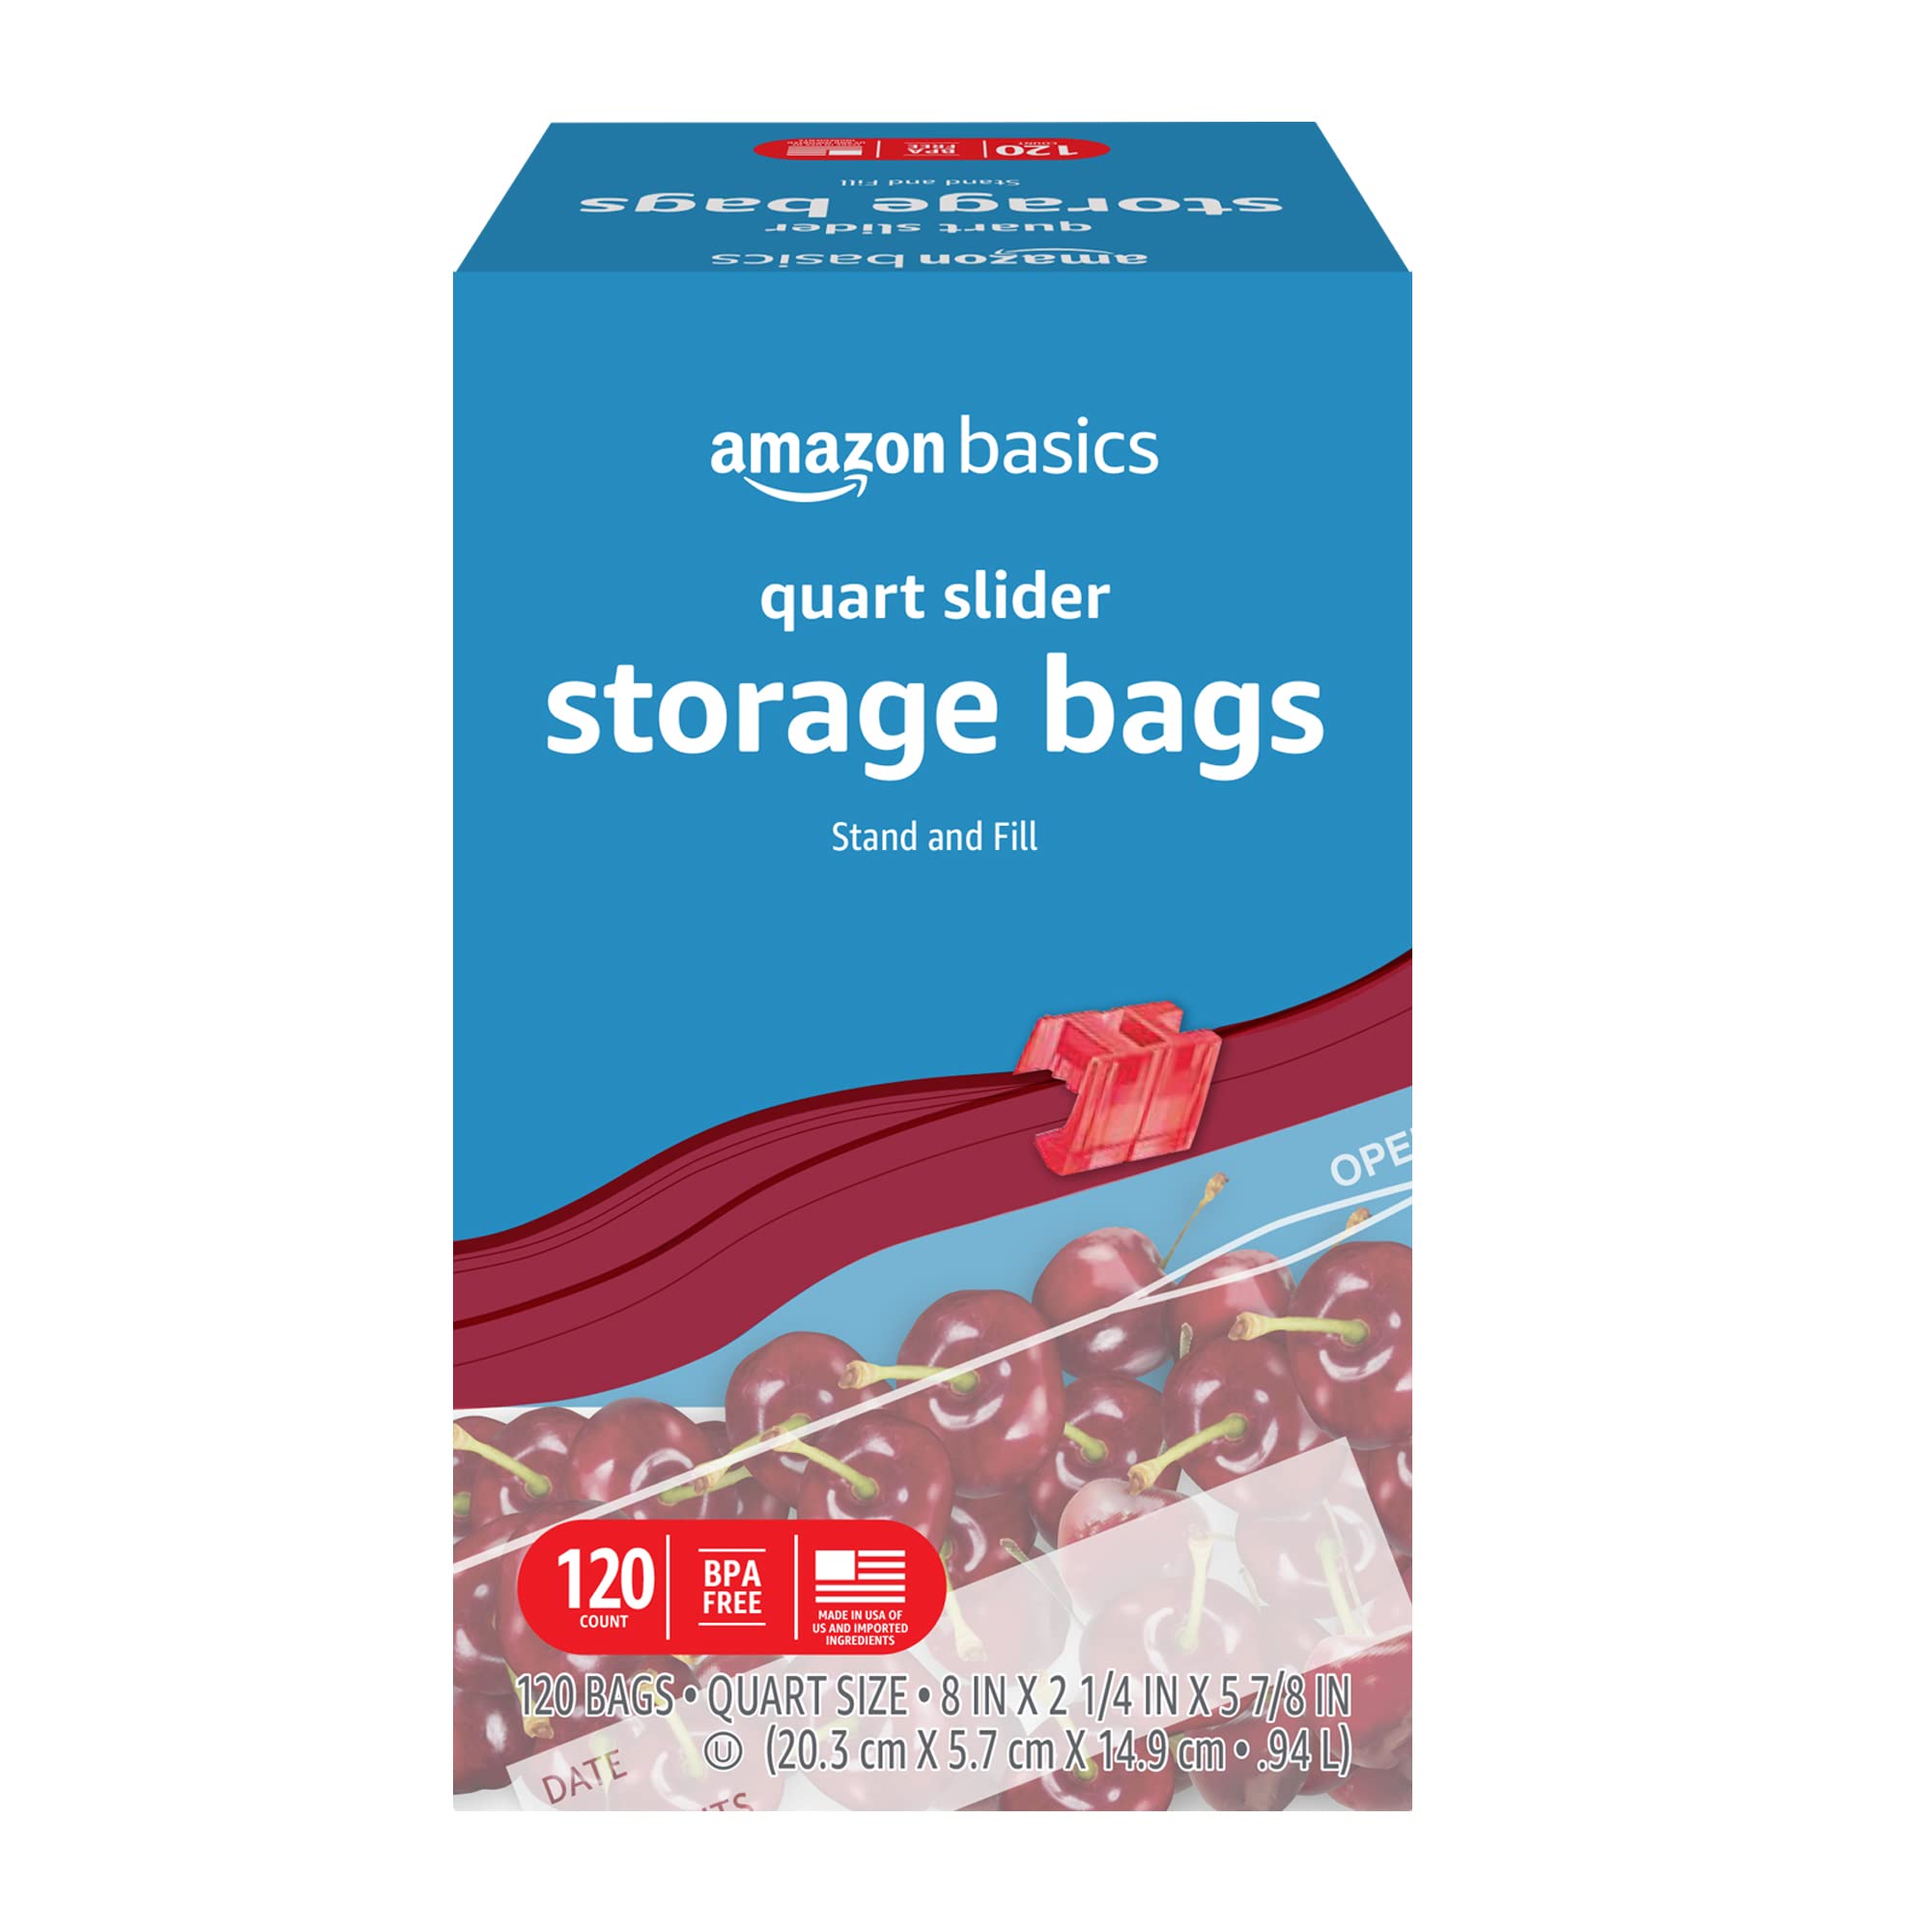 Storage Bags Quart Slider - Best Yet Brand